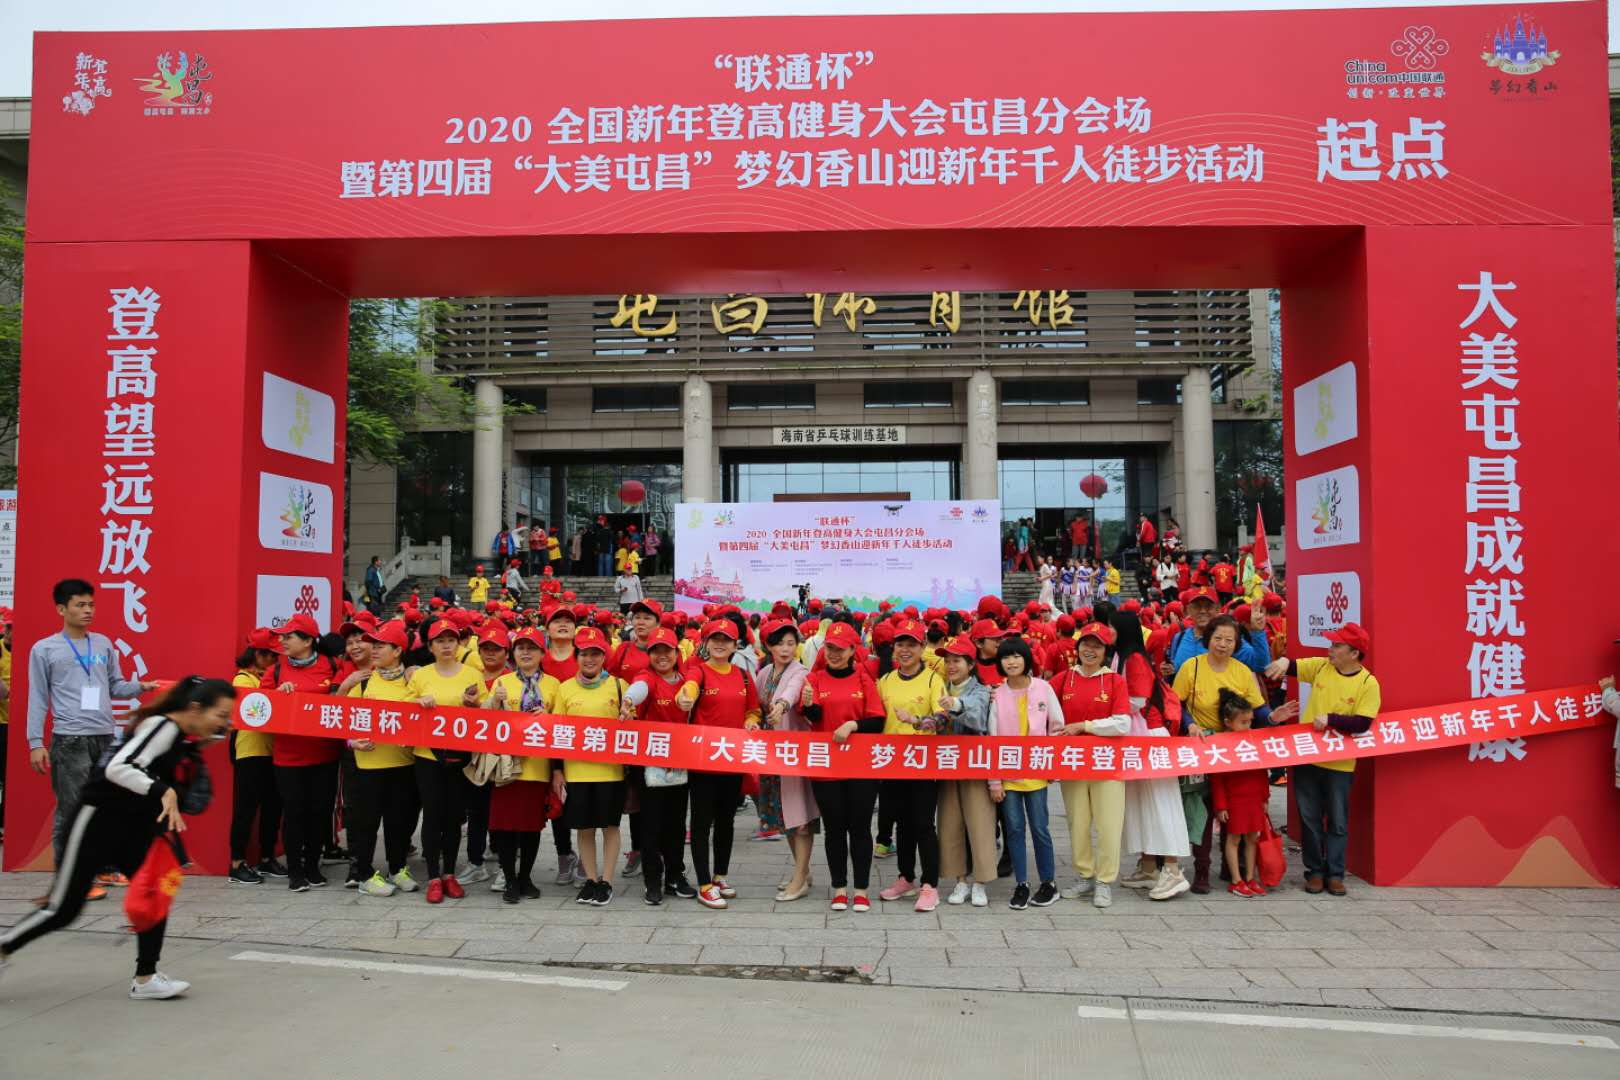 2020全国新年登高健身大会屯昌县会场举行迎新年千人徒步活动